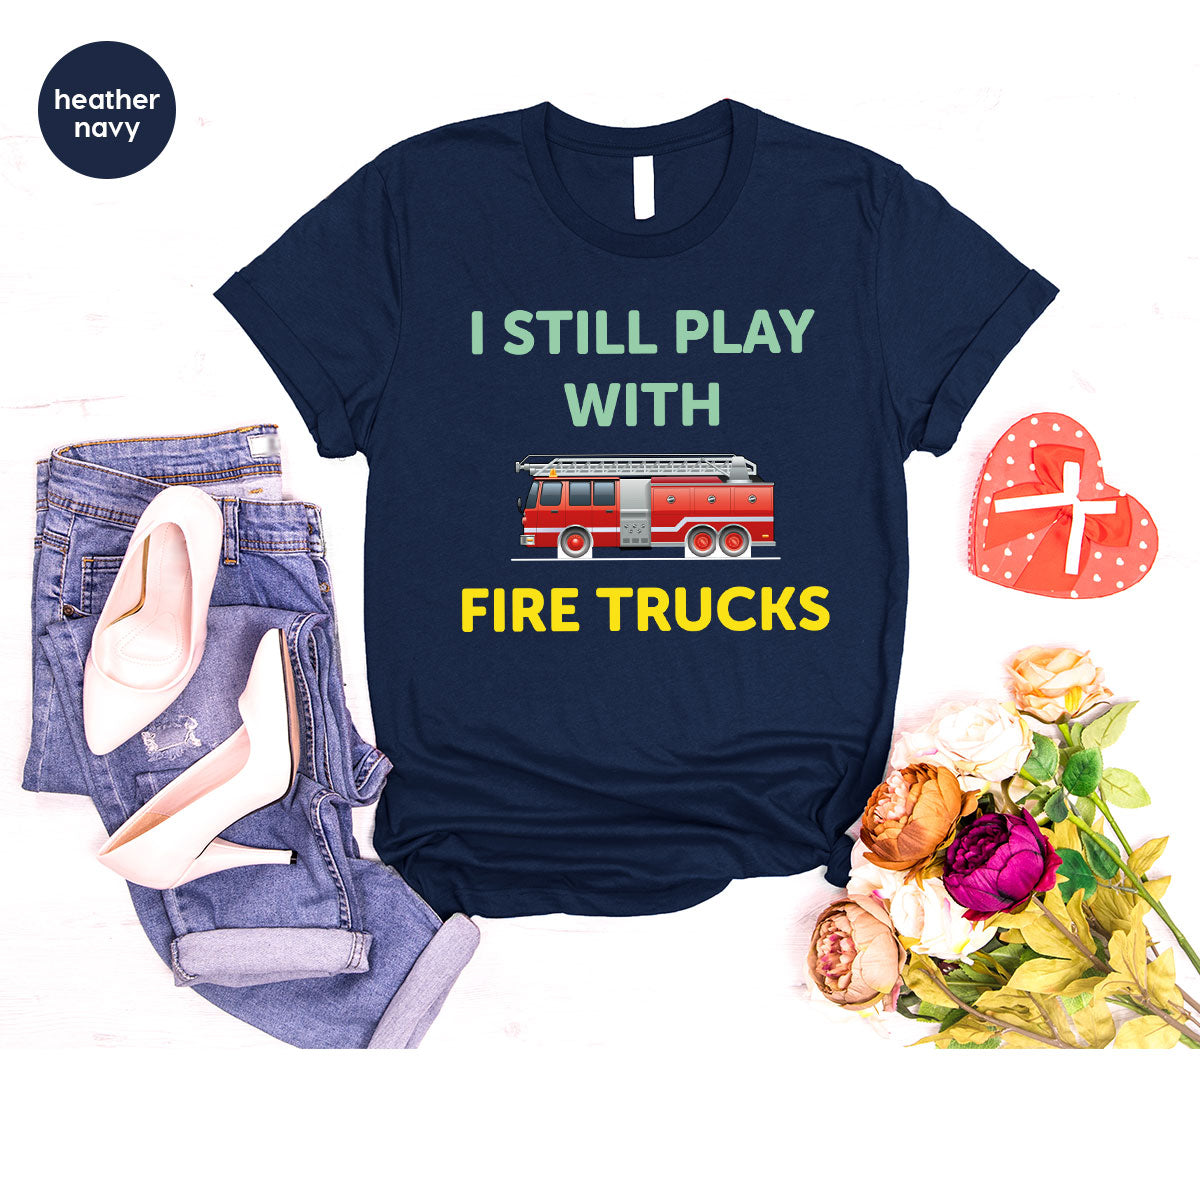 Fire Truck Shirt, Funny Fire Fighter T-Shirt, Fireman Tee